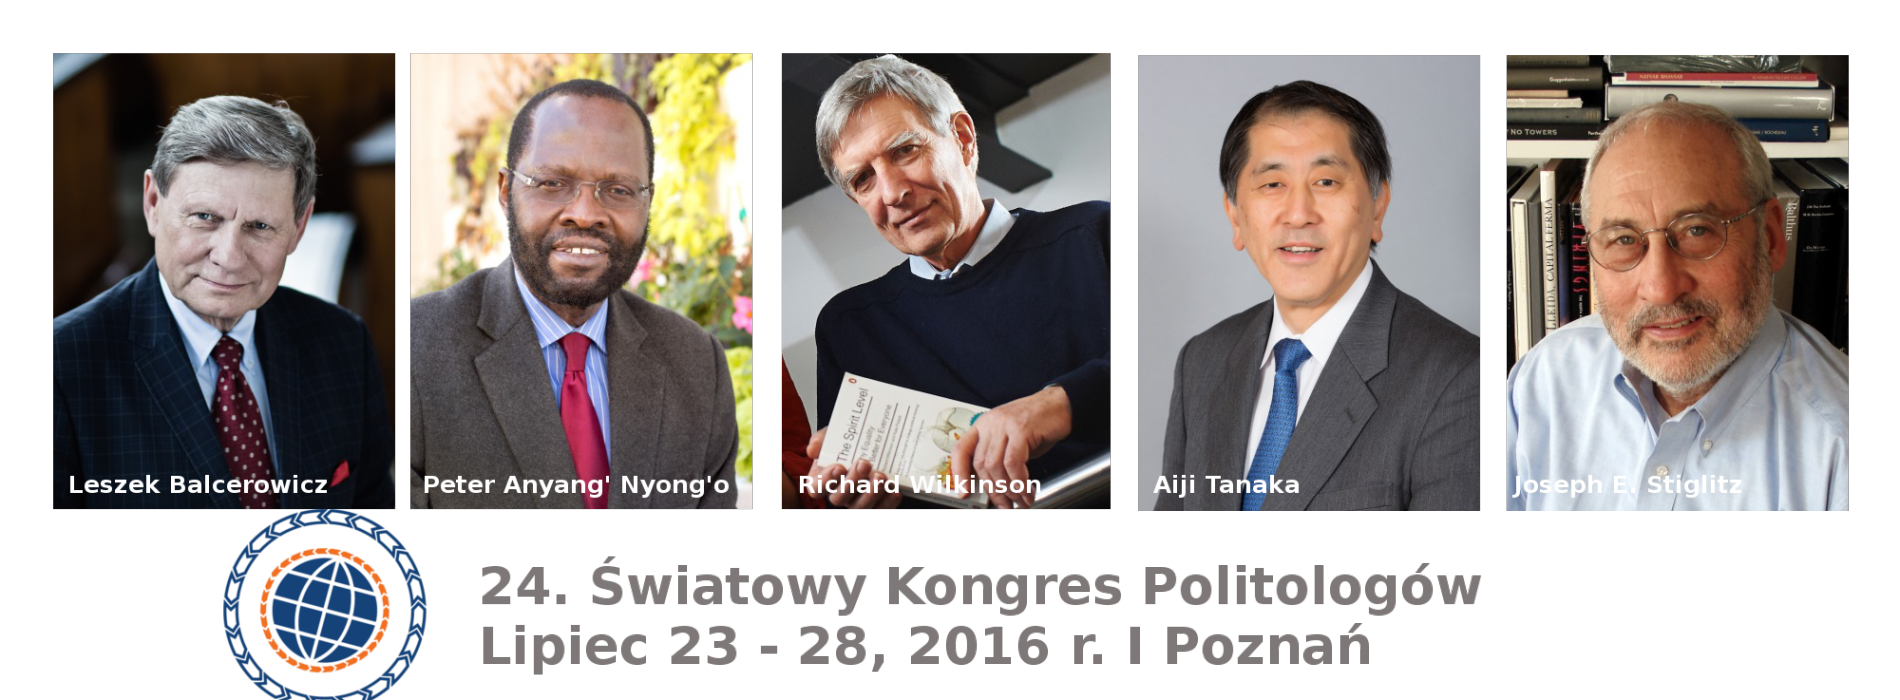 Poznań – zbliża się Światowy Kongres Politologów